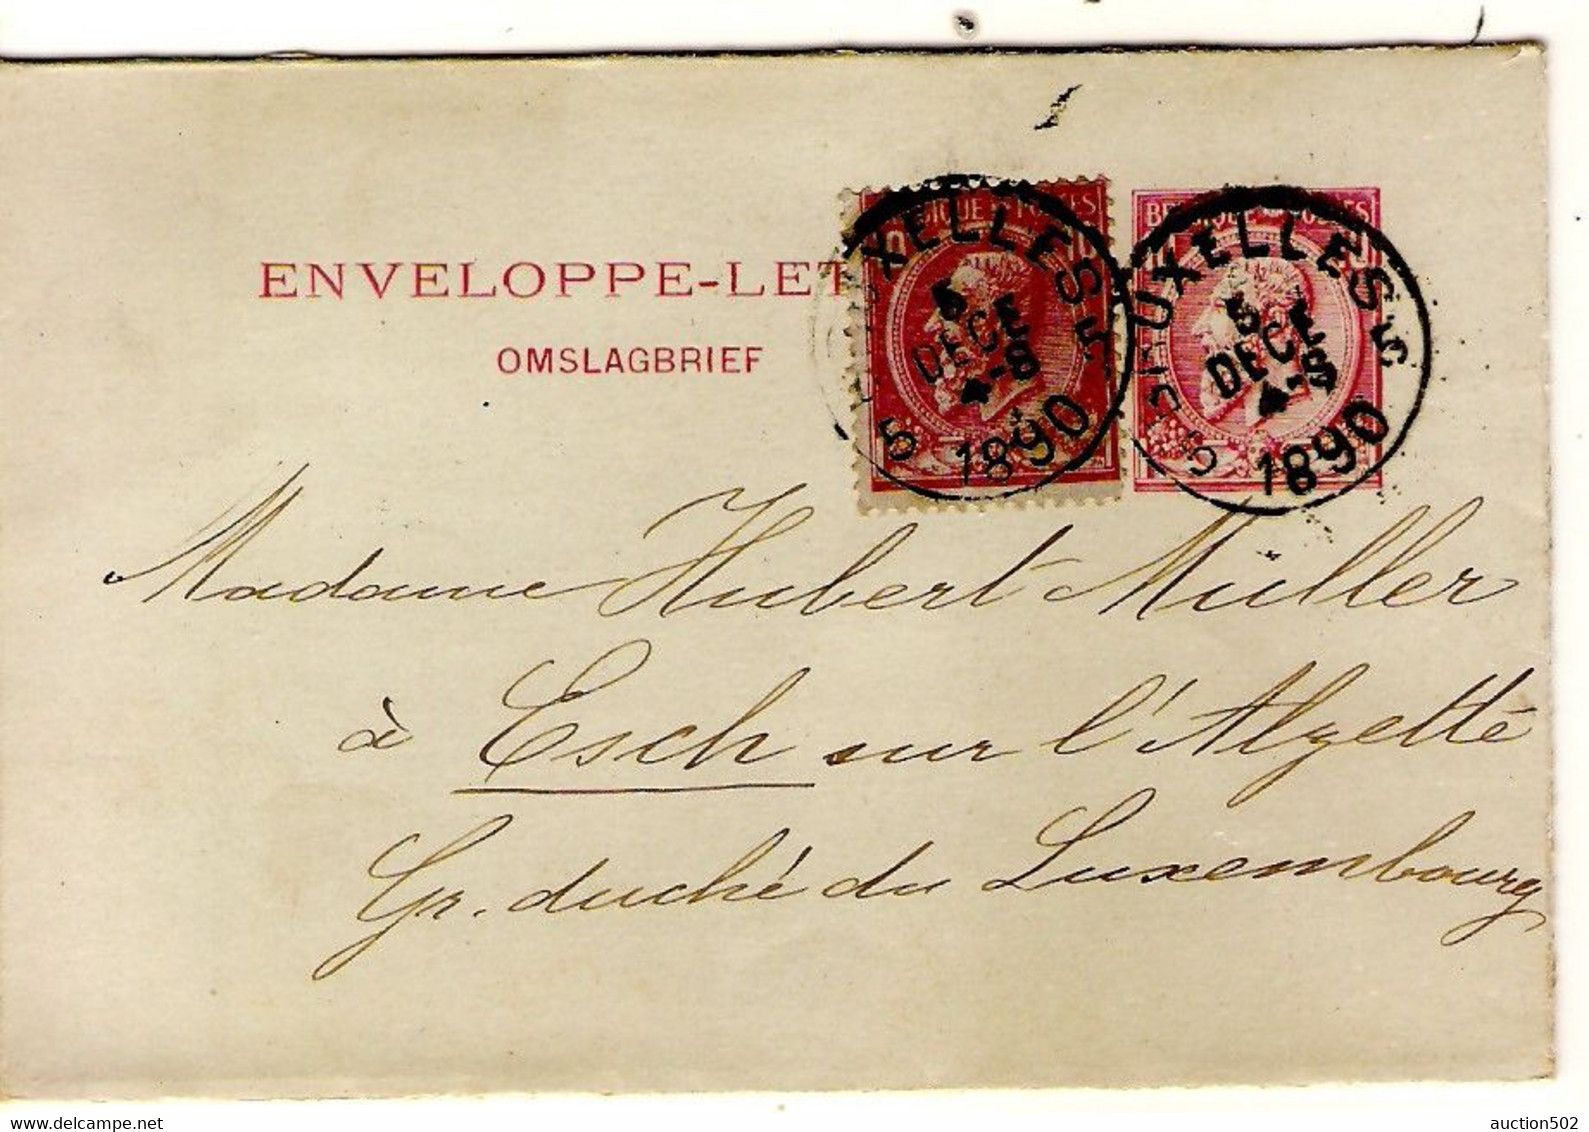 1802PR/ Entier Enveloppe-Lettre N°1 + TP 46 Tarif Préférentiel Obl. Bruxelles 1890 > Gd Duché Esch Via Luxembourg Ville - Letter Covers